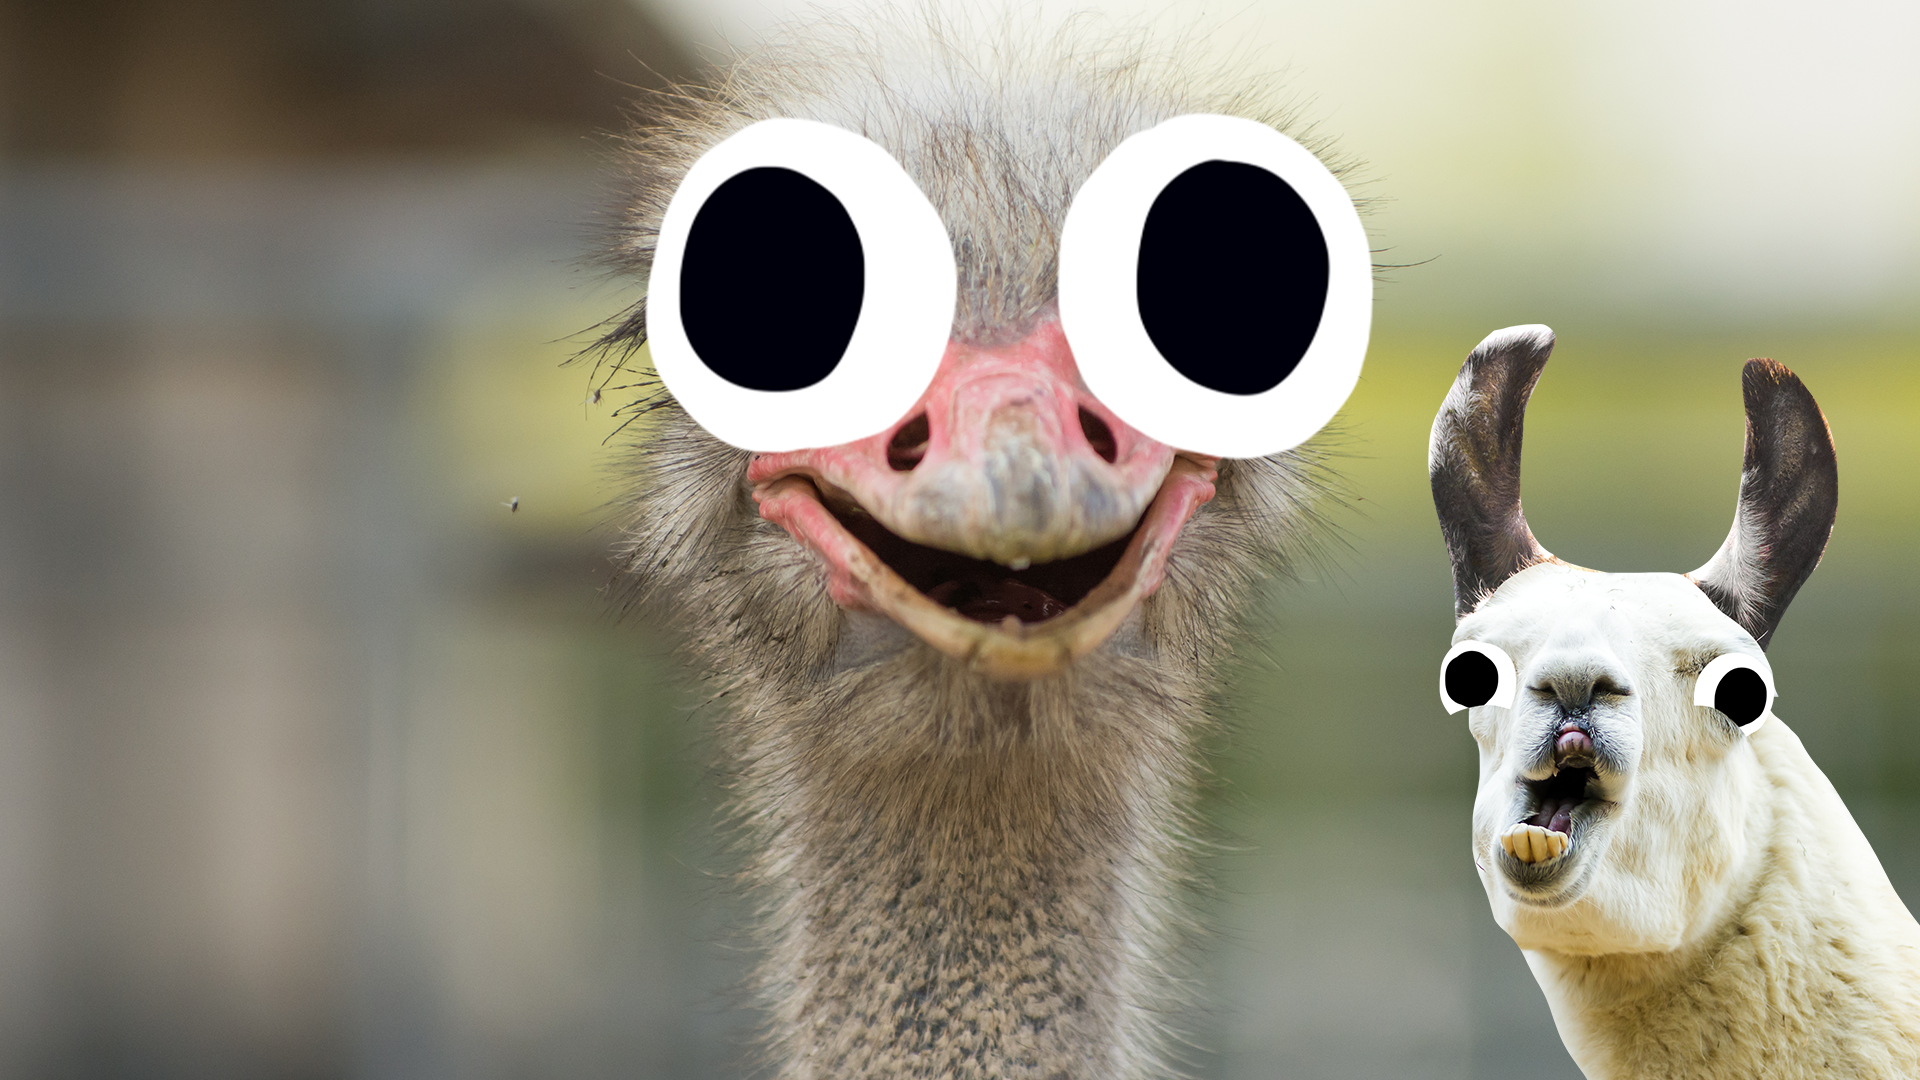 Goofy ostrich and goofy llama